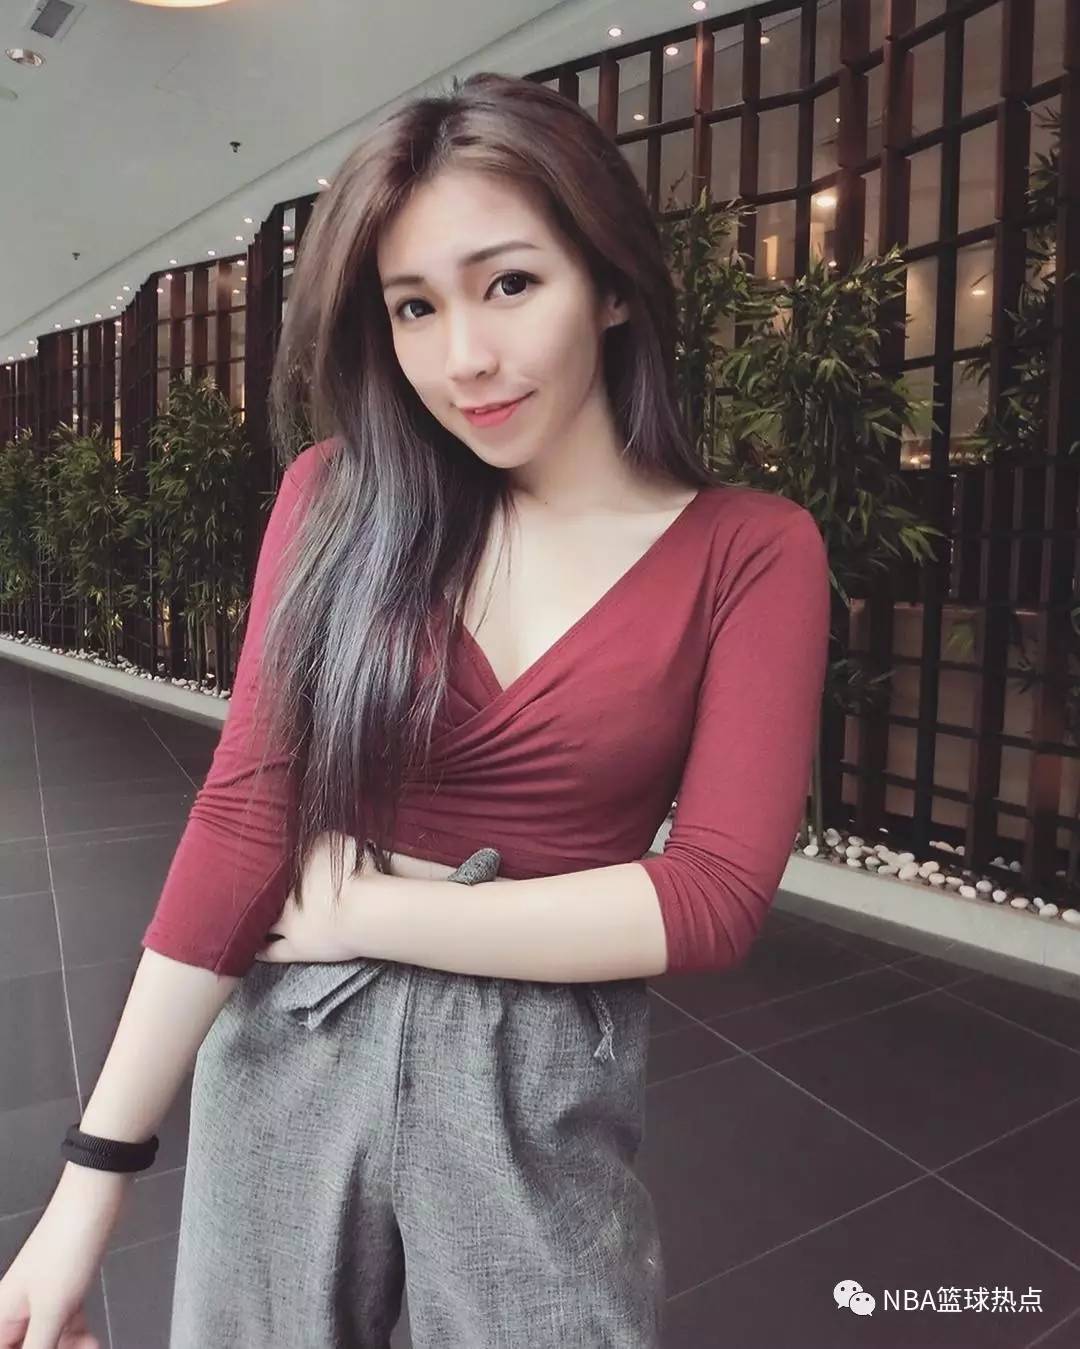 马来西亚性感美女身材火辣颜值超高